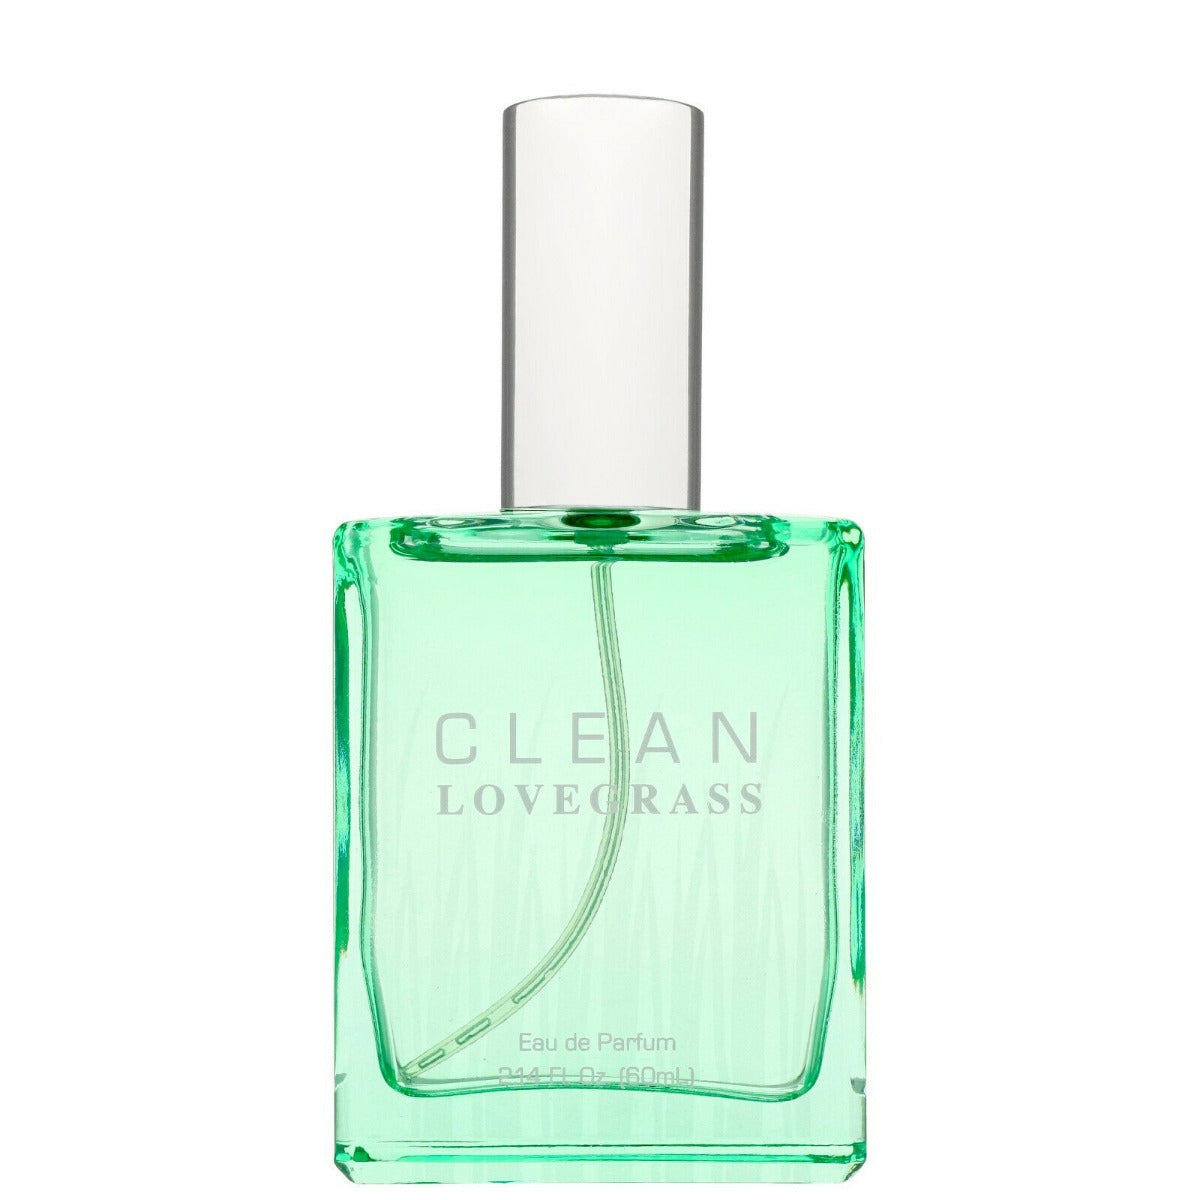 CLEAN LOVEGRASS FOR UNISEX EDP 60 ml - samawa perfumes 